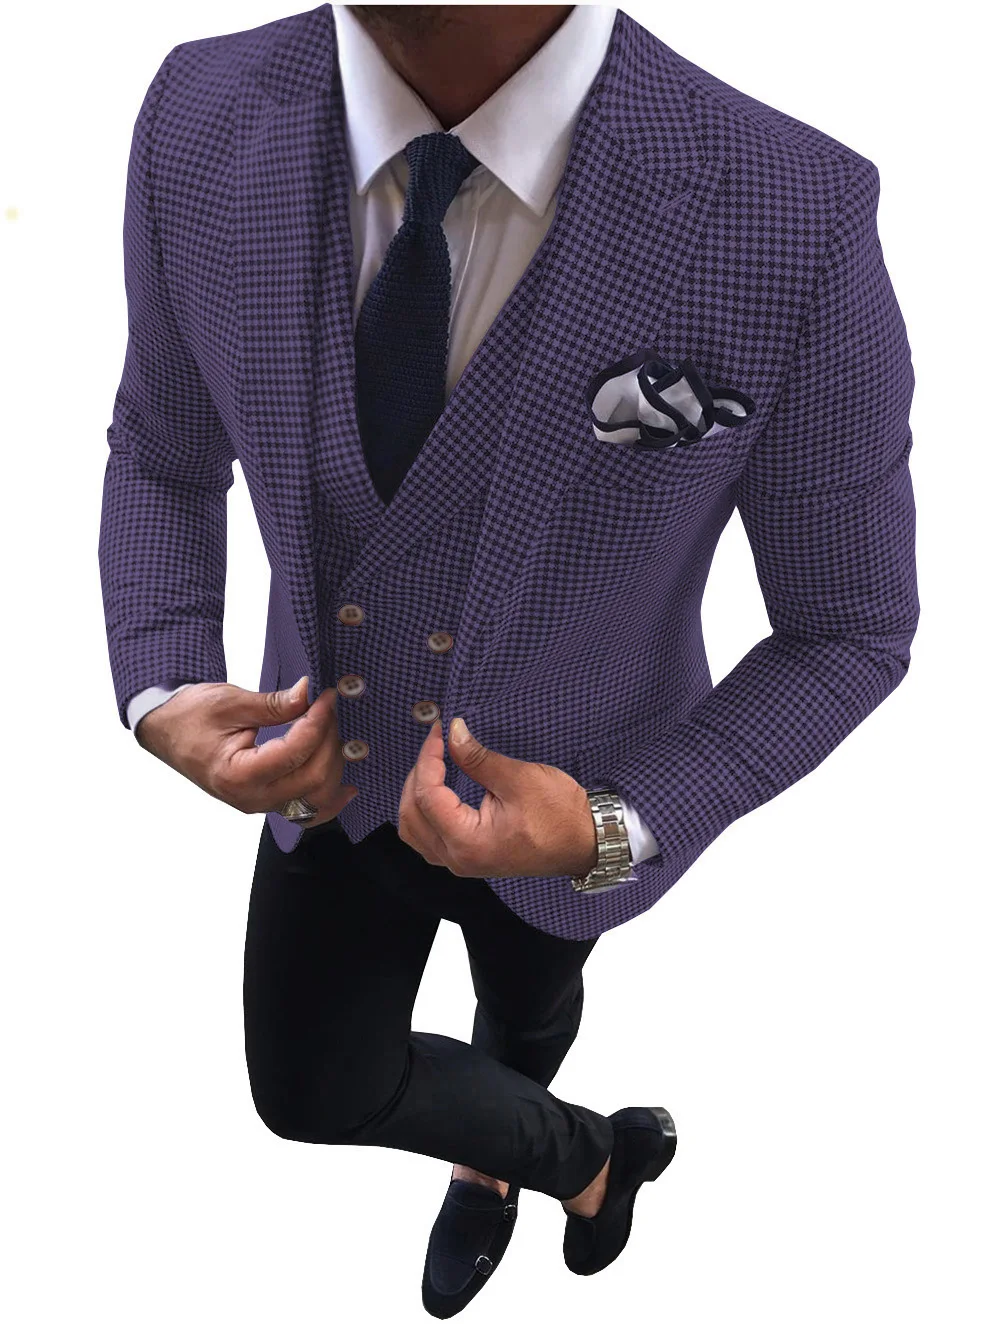 Houndstooth Suit Men High Quality Men's 3 Pieces Leisure Plaid Wedding Business Party Suit (Jacket+Pants+Vest) Custom size suit